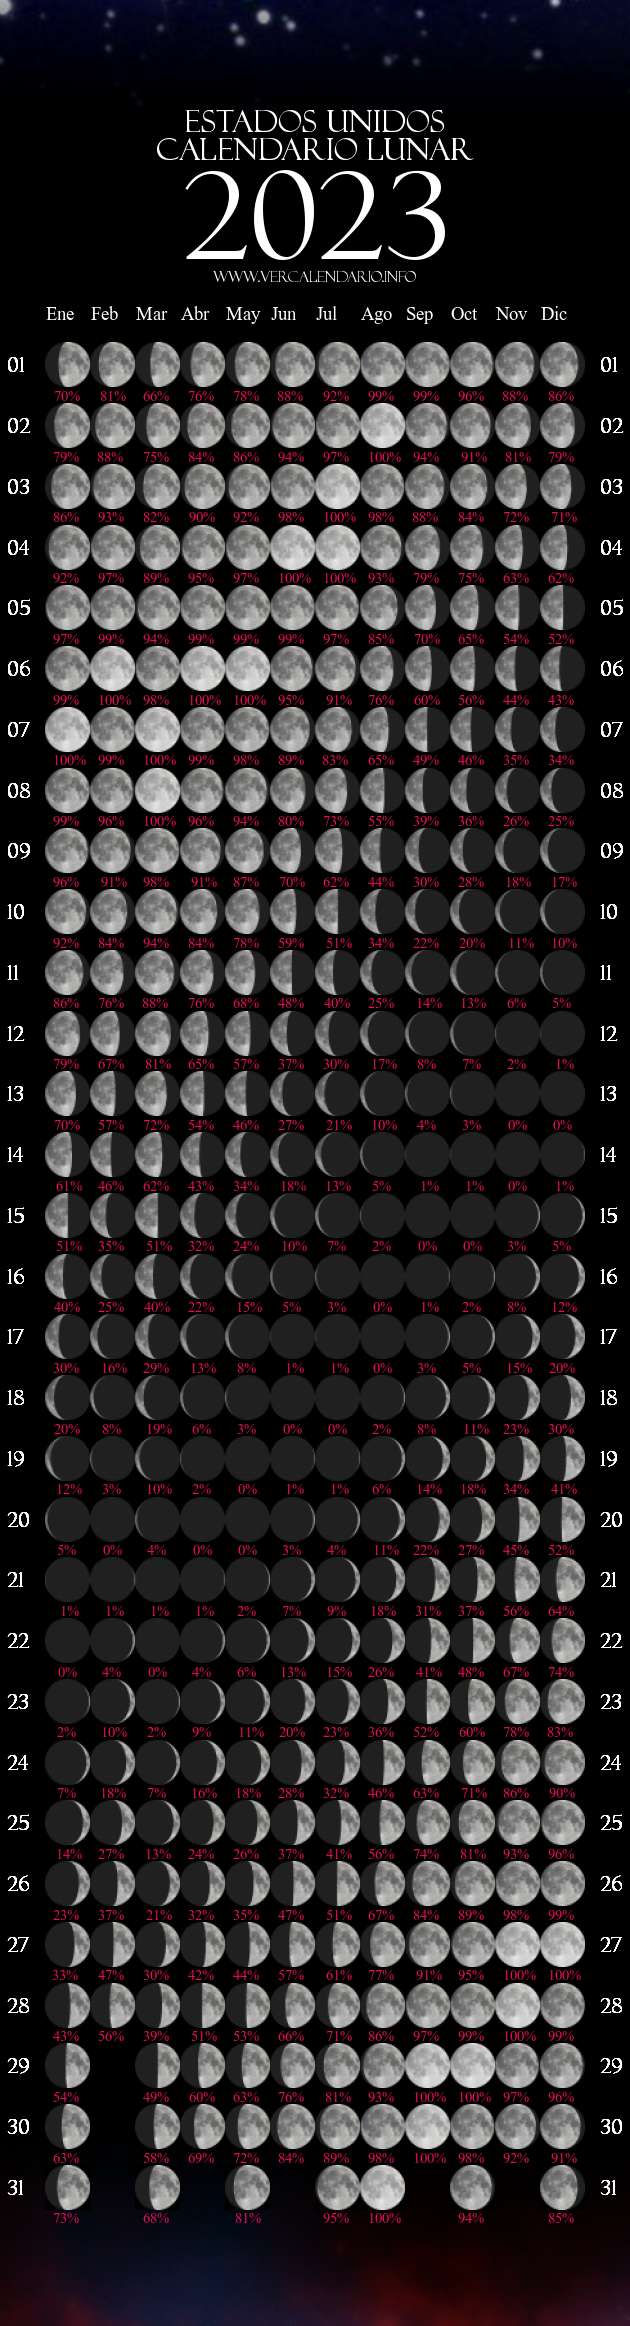 Fase Lunar Del 2023 Calendario Lunar 2023 (Estados Unidos)